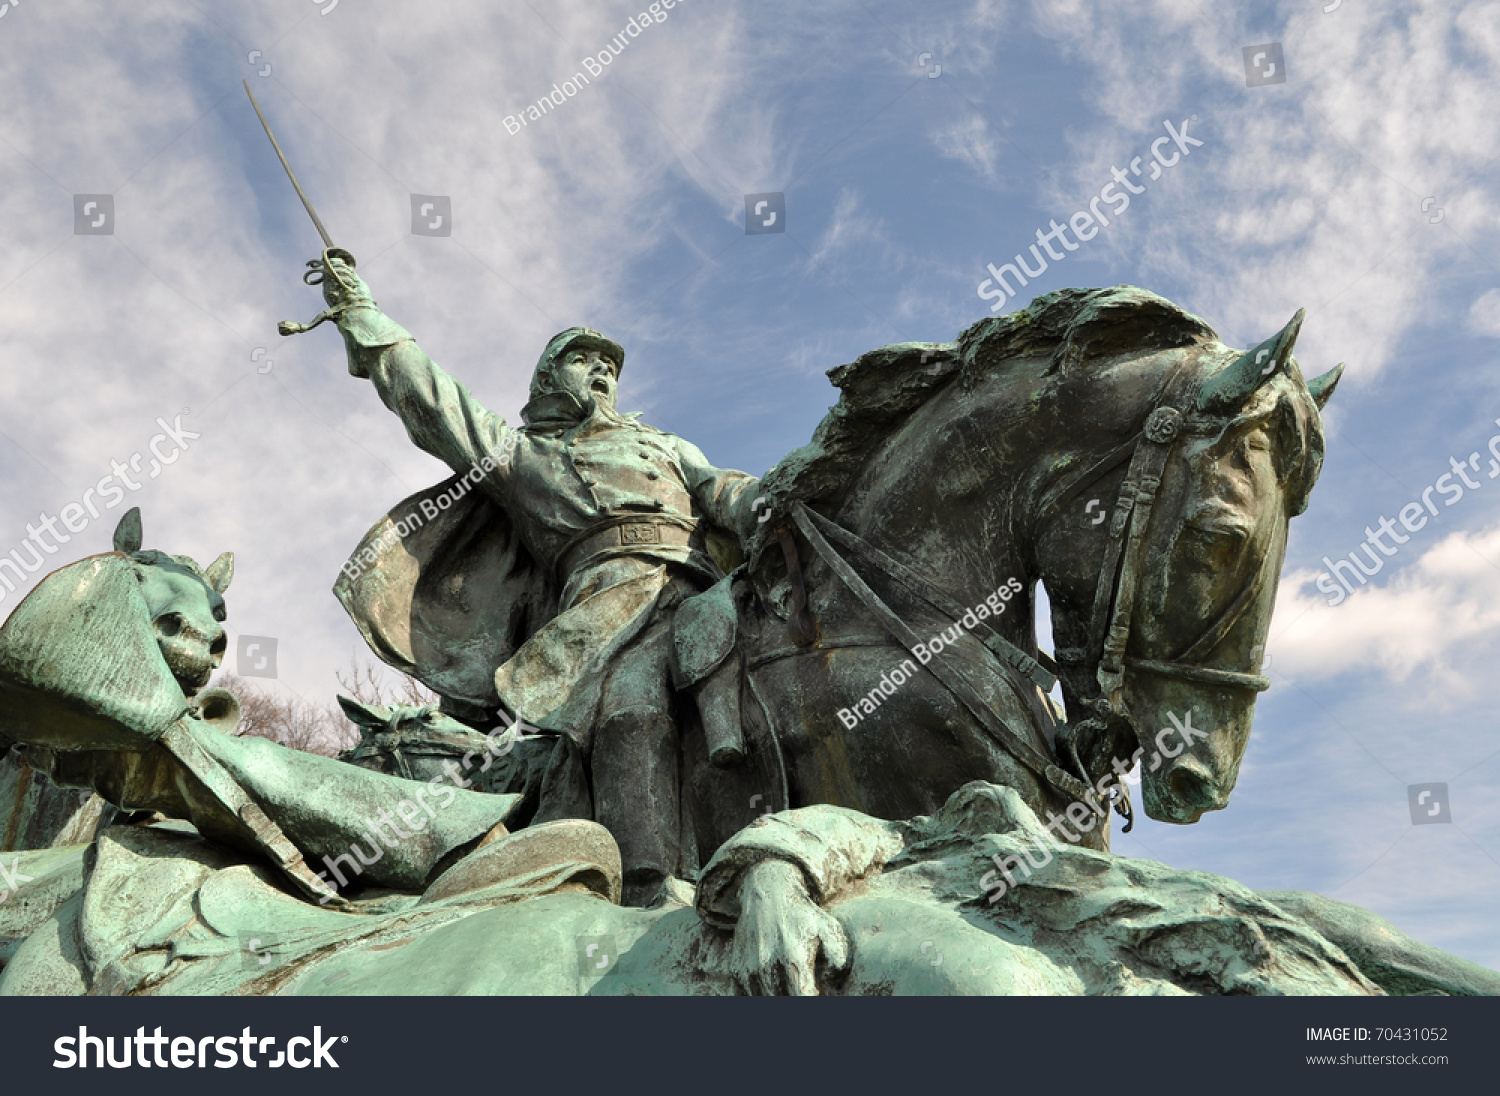 Civil War Soldier Statue in Washington DC #70431052